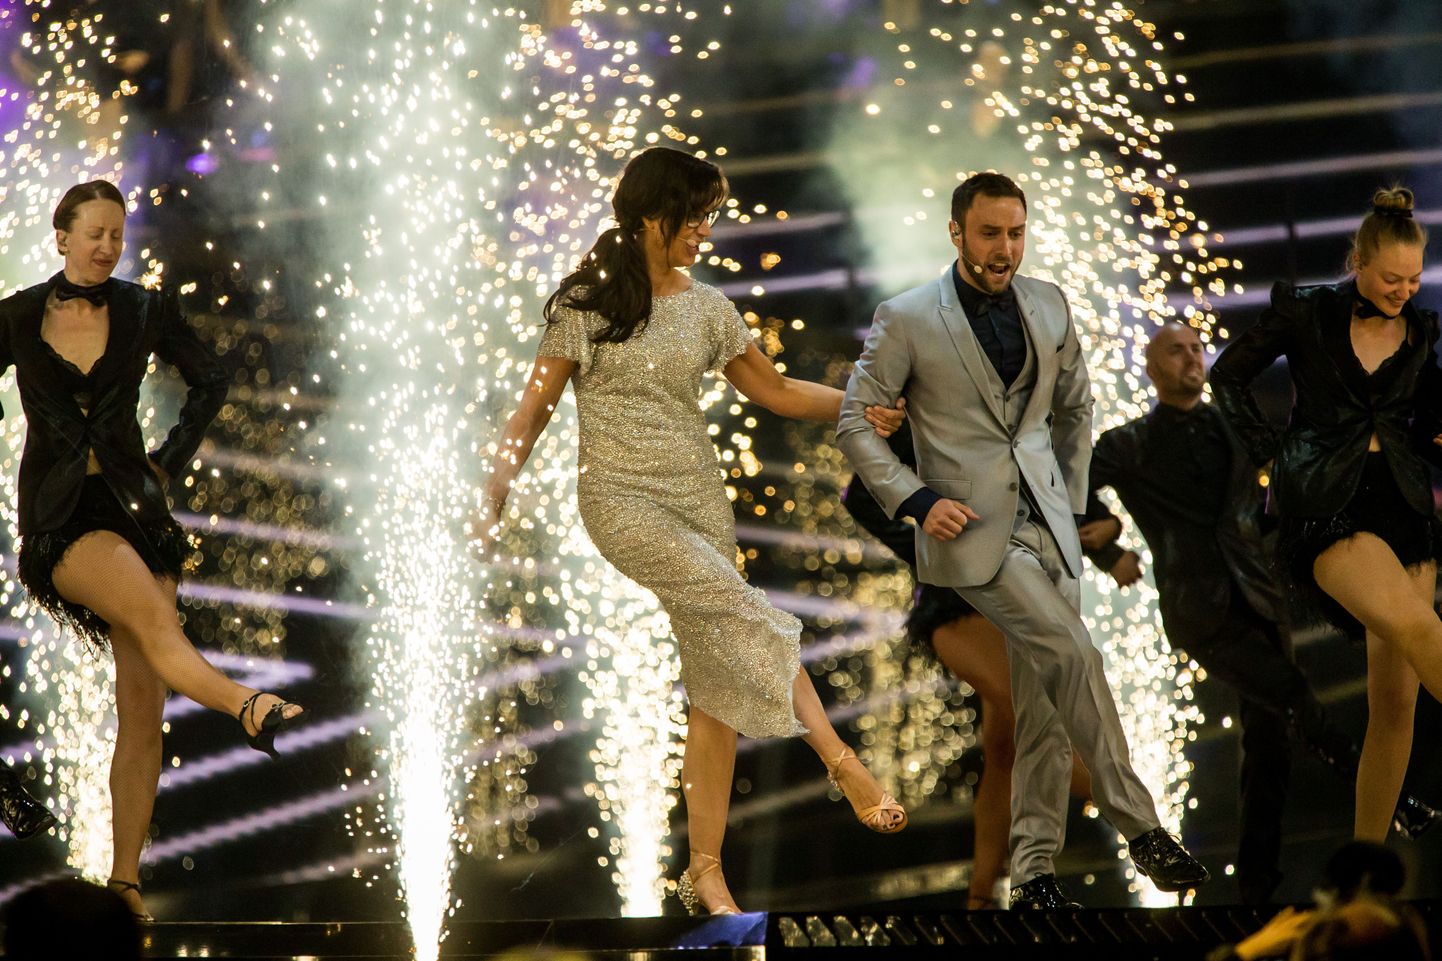 Eurovisioon 2016, teise poolfinaali peaproov, Petra Mede ja Måns Zelmerlöw